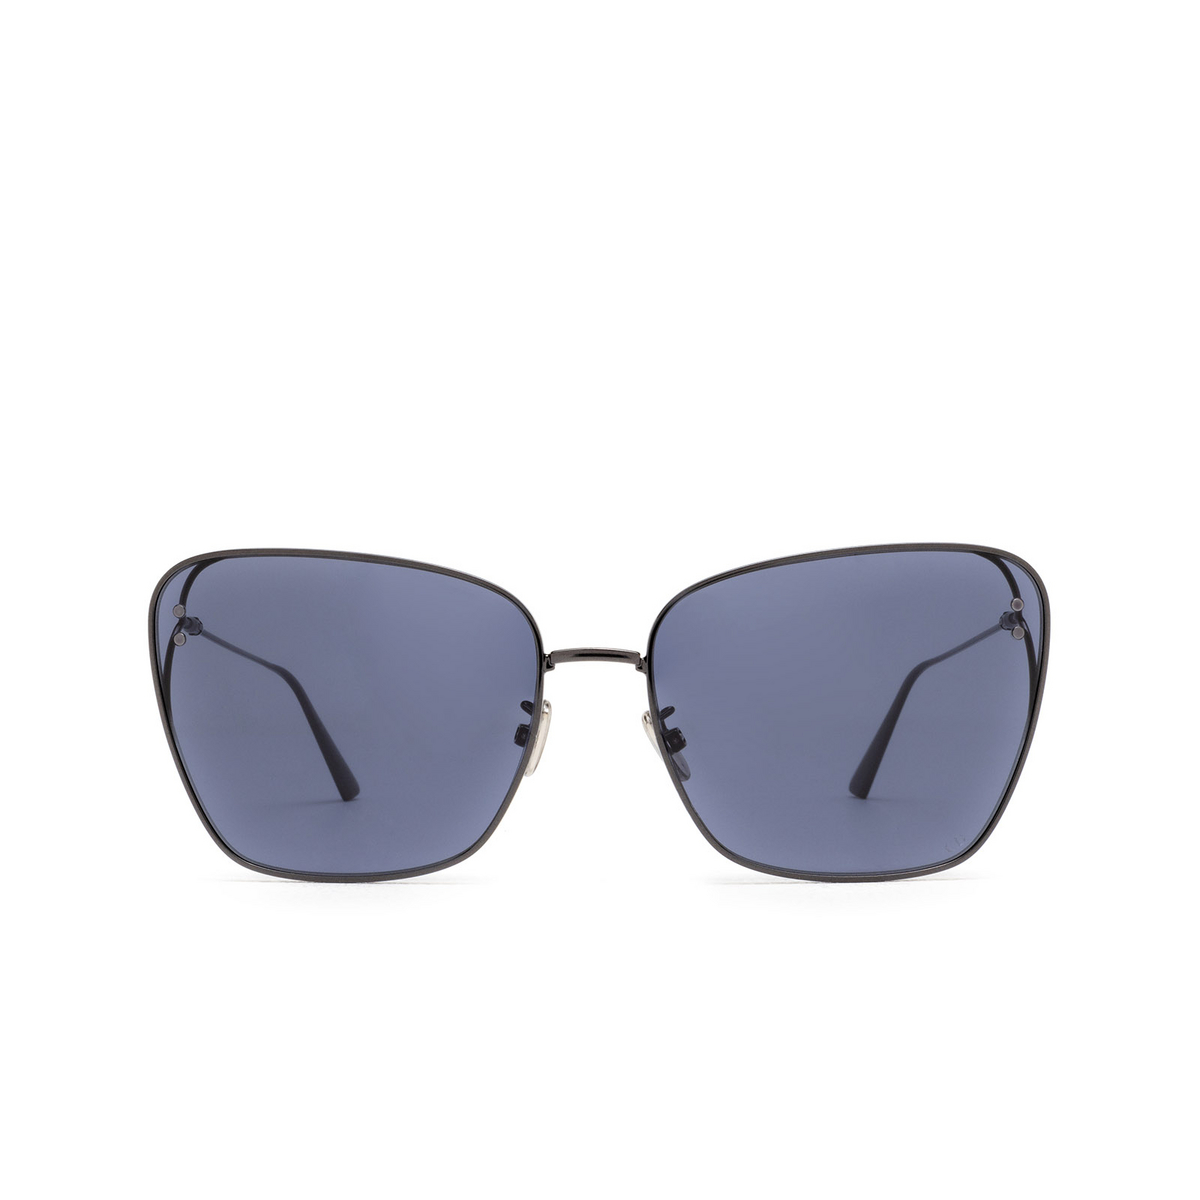 Sunglasses Dior MISSDIOR B2U - Mia Burton